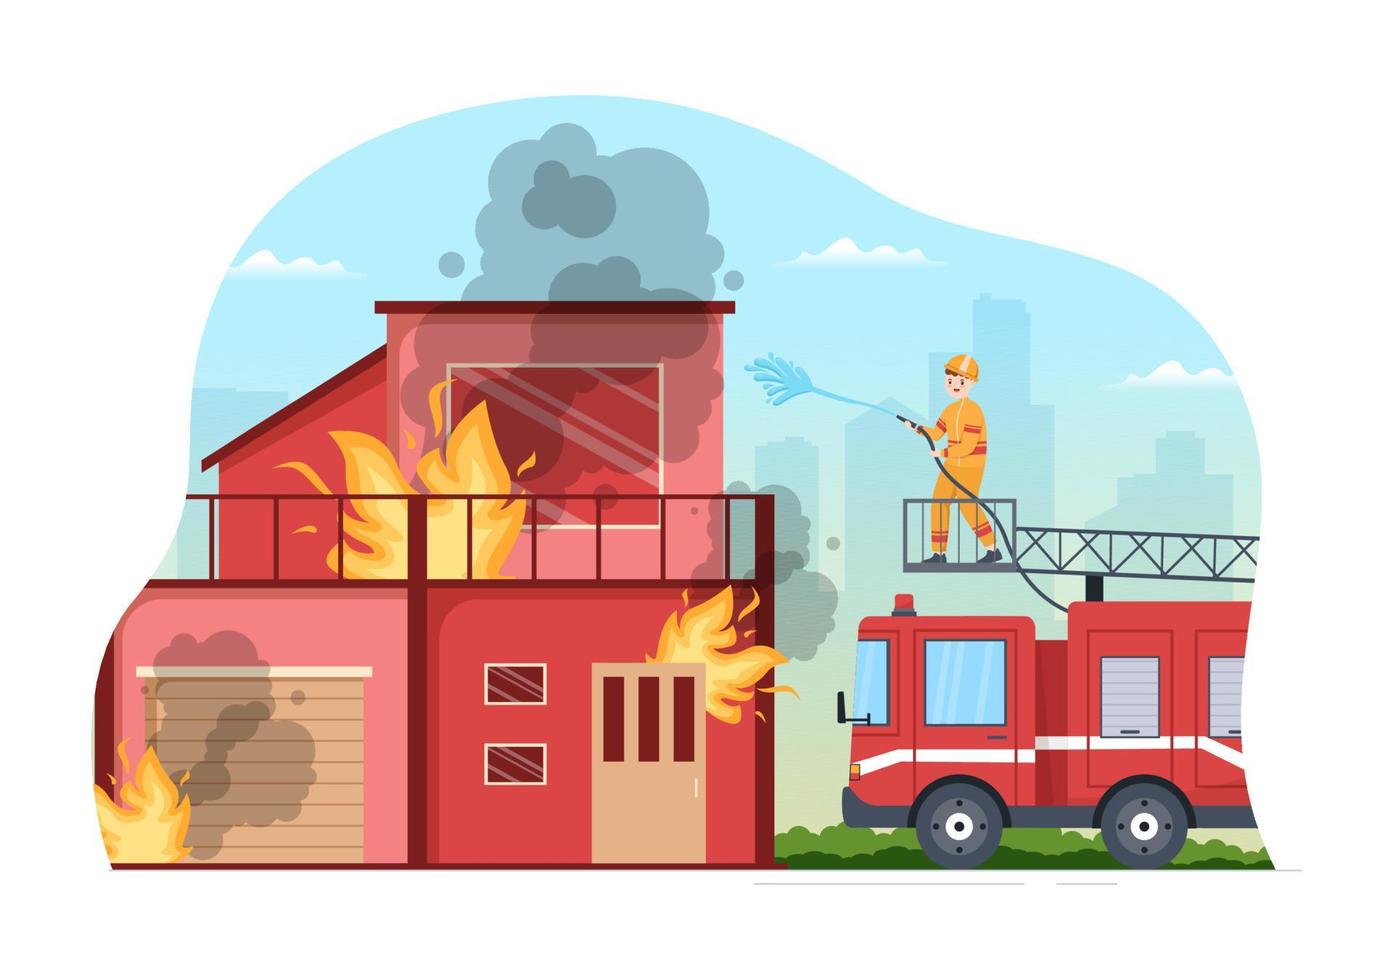 departamento de bomberos con bomberos extinguiendo la casa, el bosque y ayudando a las personas en diversas situaciones en una ilustración de caricatura dibujada a mano plana vector